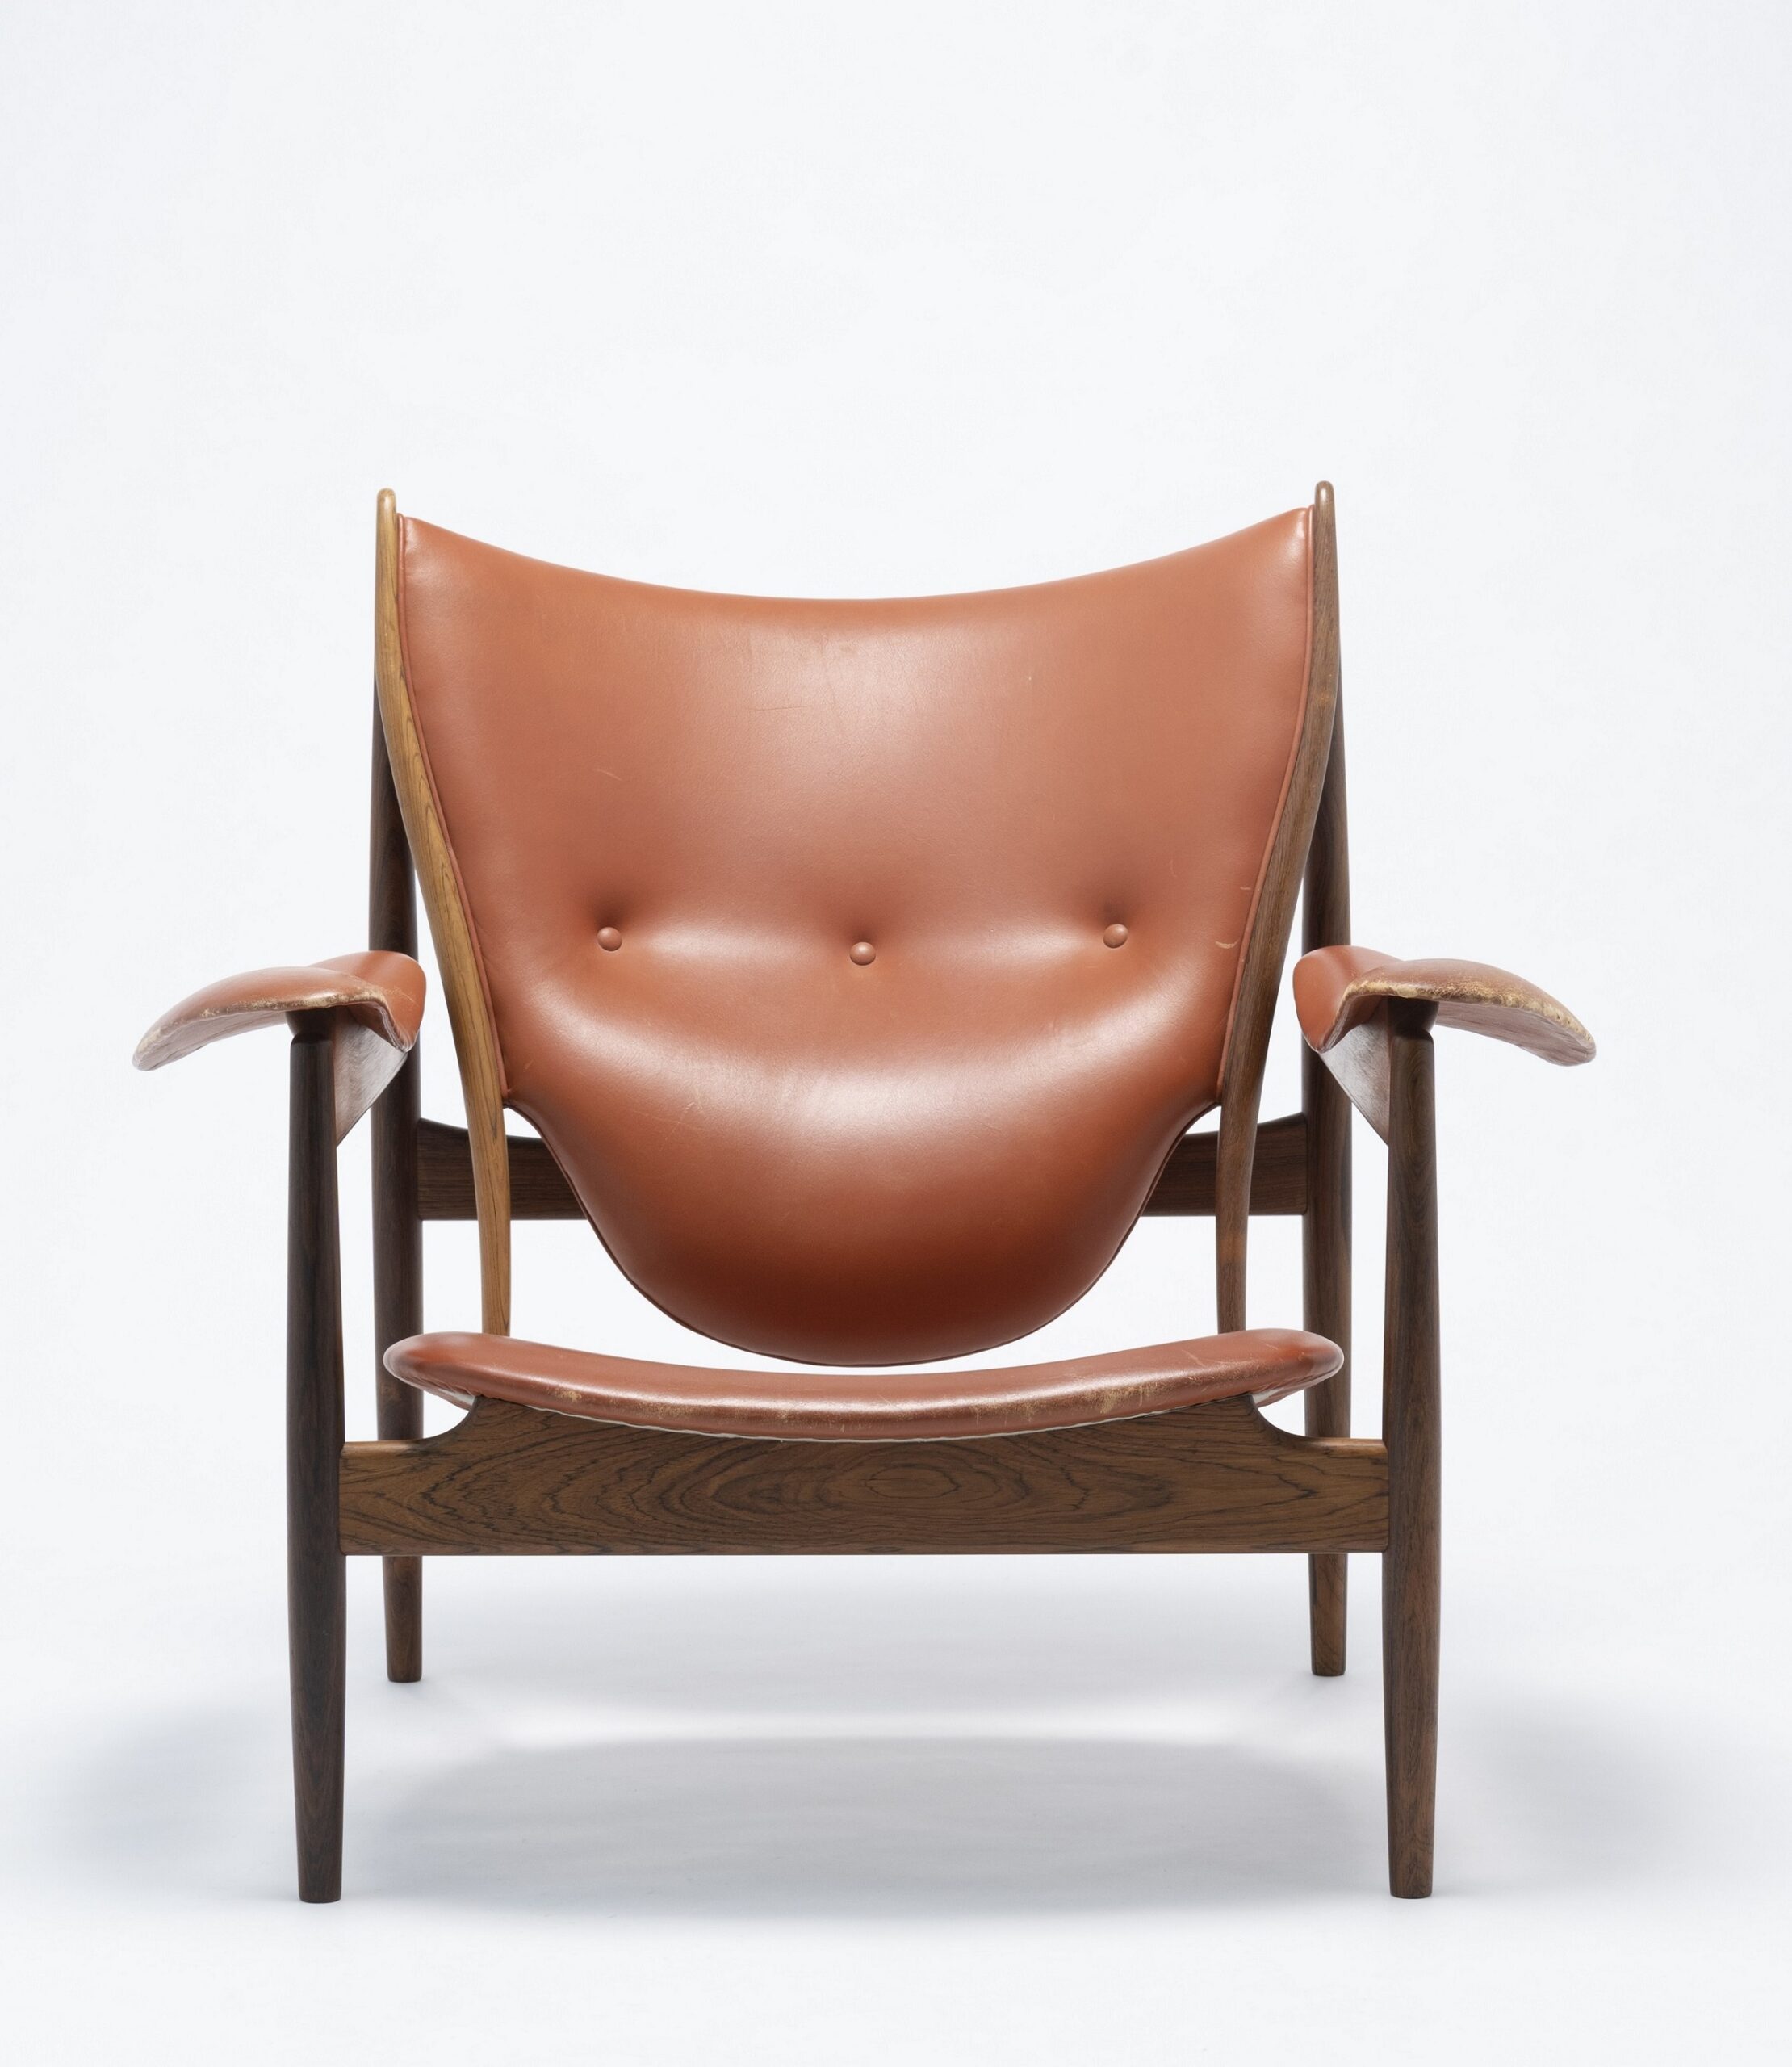 フィン・ユールとデンマークの椅子